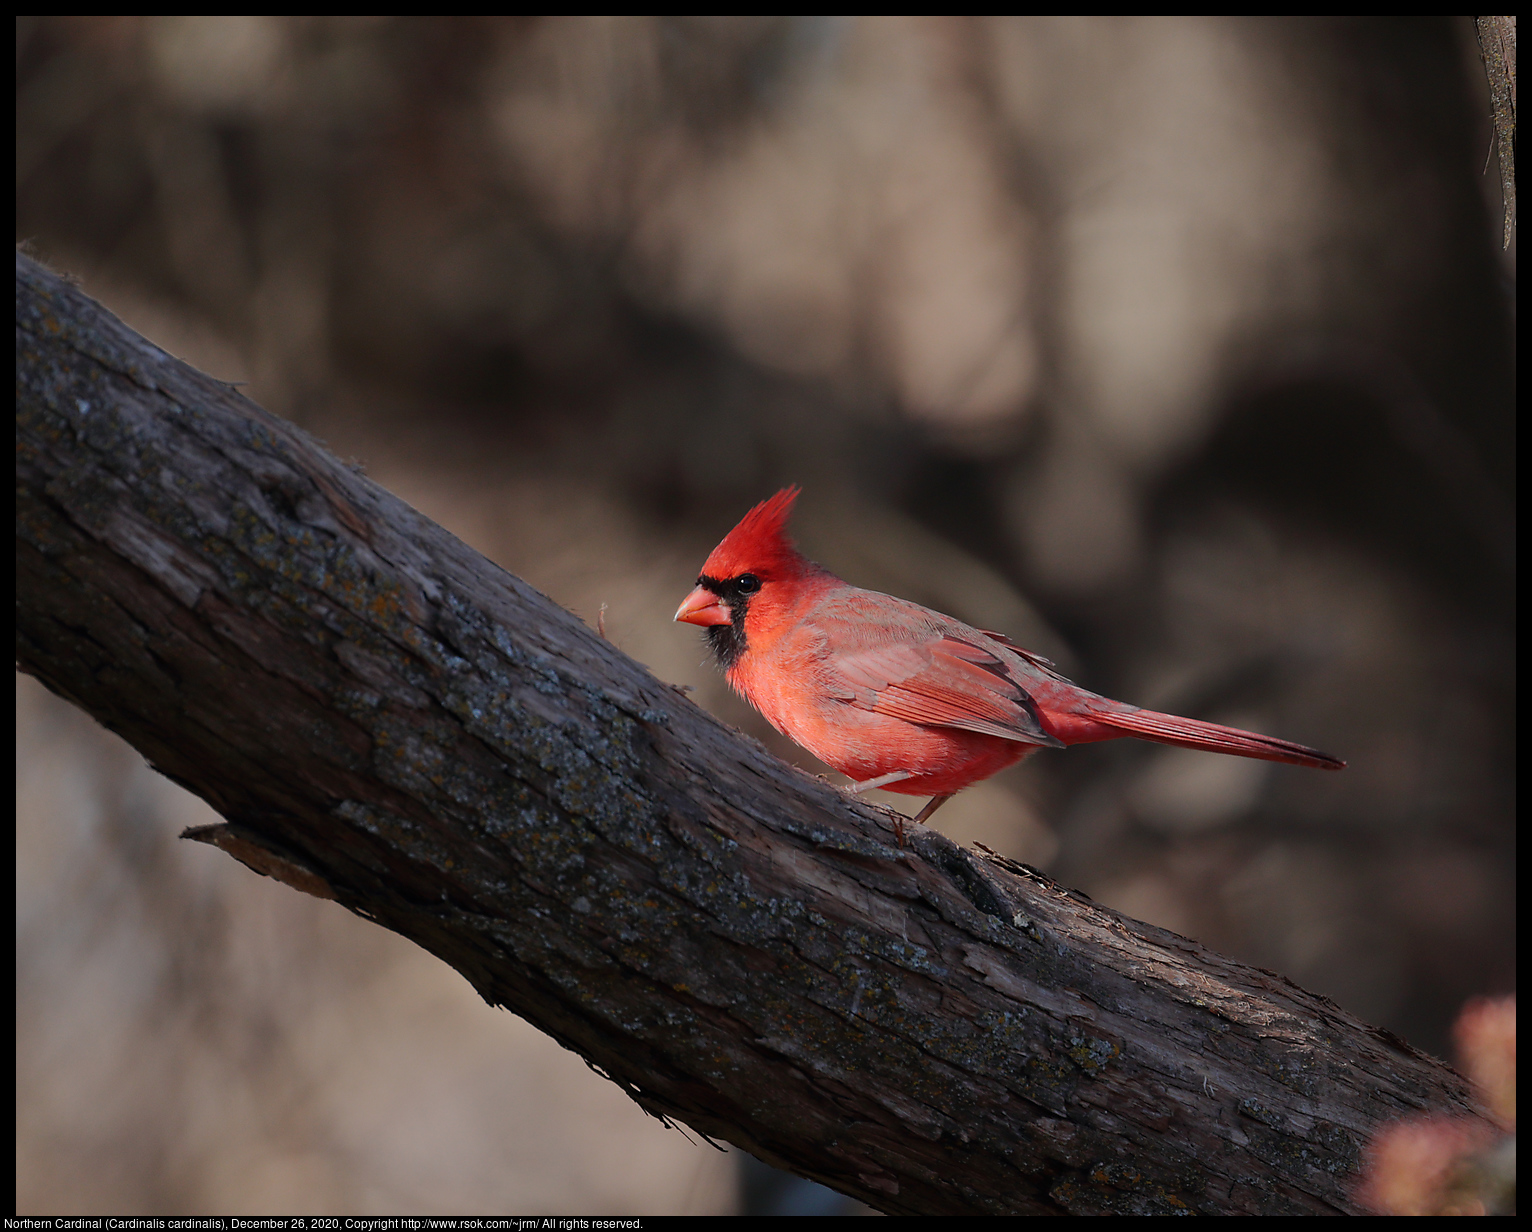 Northern Cardinal (Cardinalis cardinalis), December 26, 2020